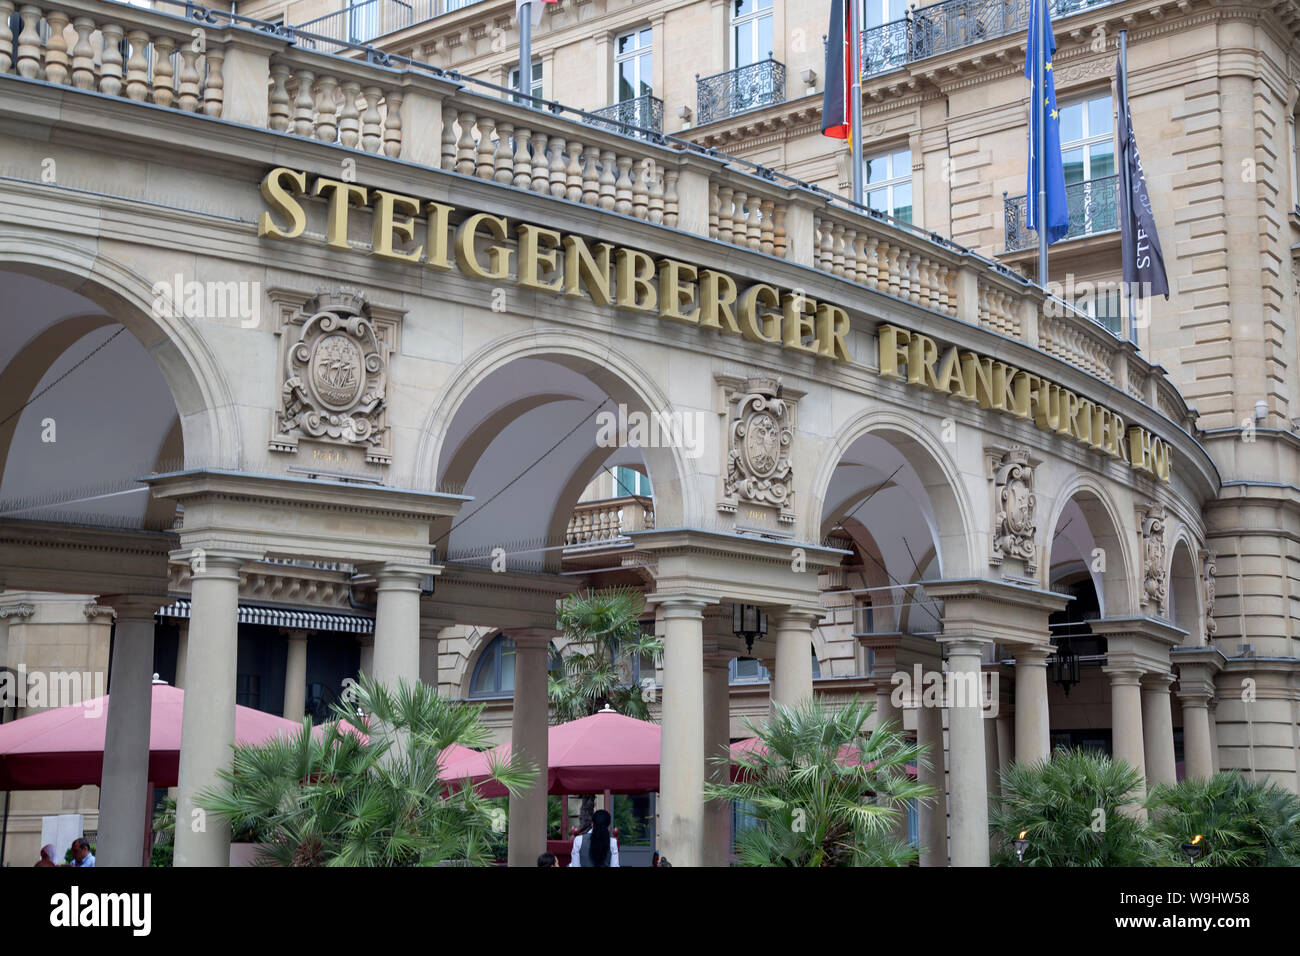 Steigenberger Frankfurter Hof Restaurant, Cafe and Hotel; Frankfurt; Germany Stock Photo